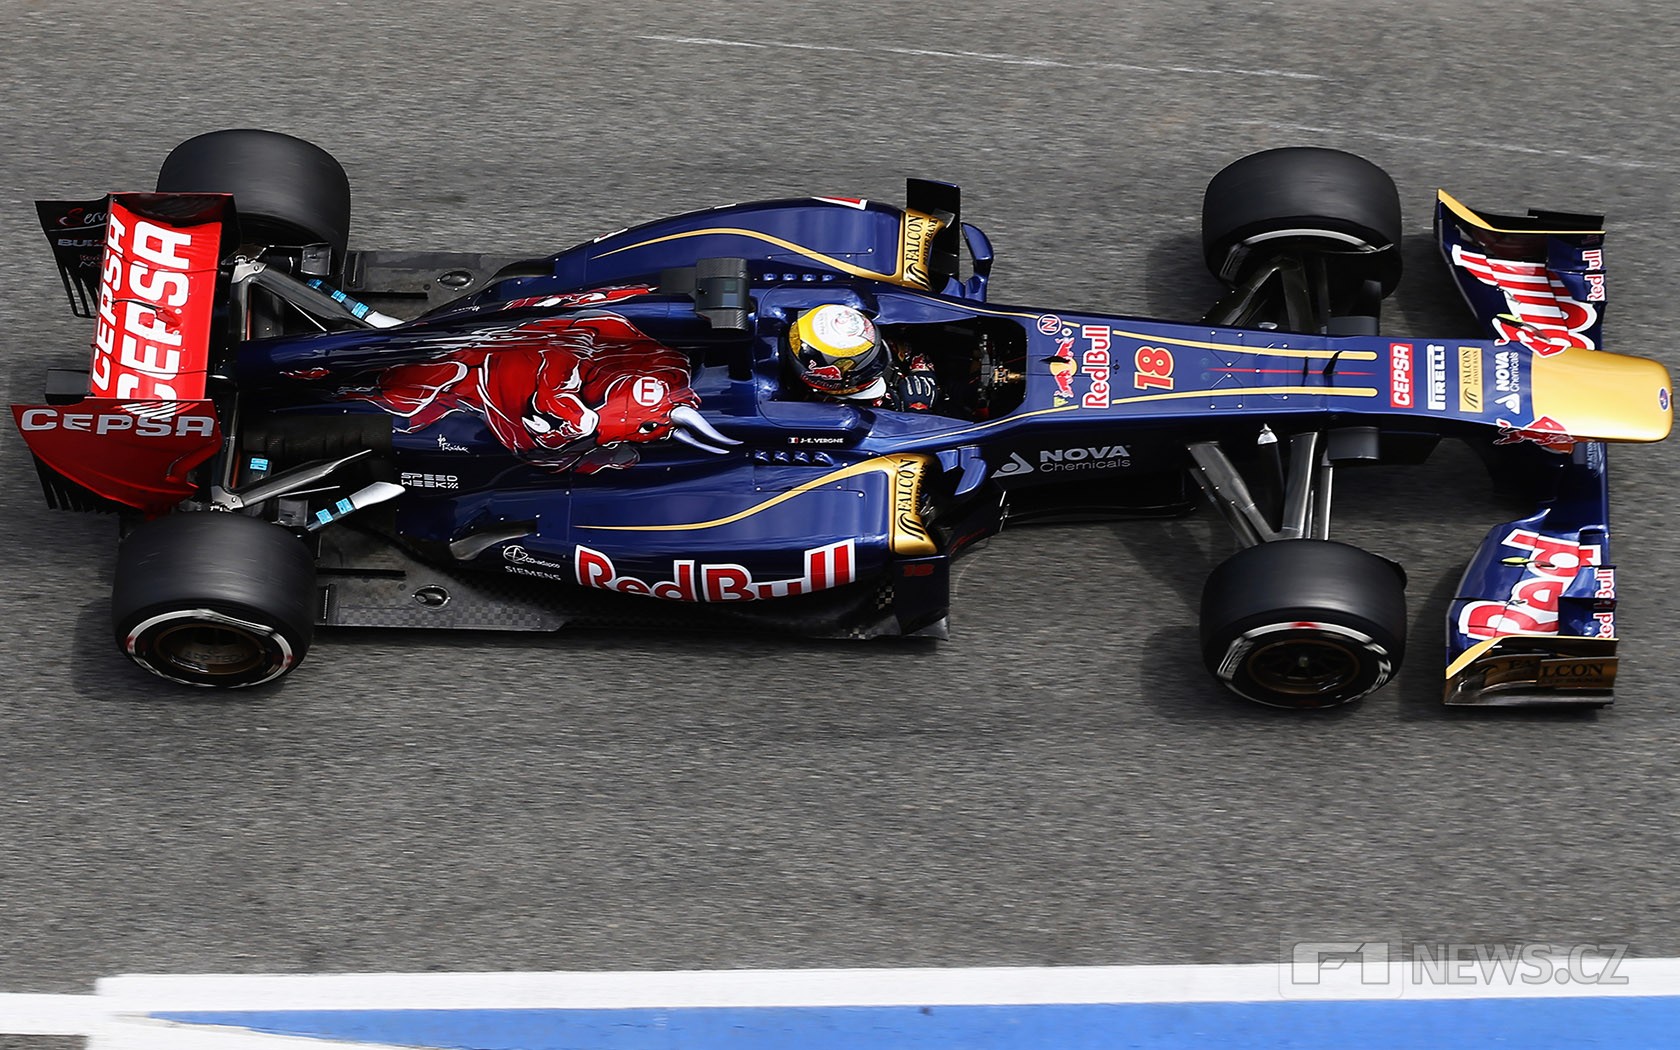 V roce 2013 monoposty Toro Rosso poháněly ještě motory od Ferrari